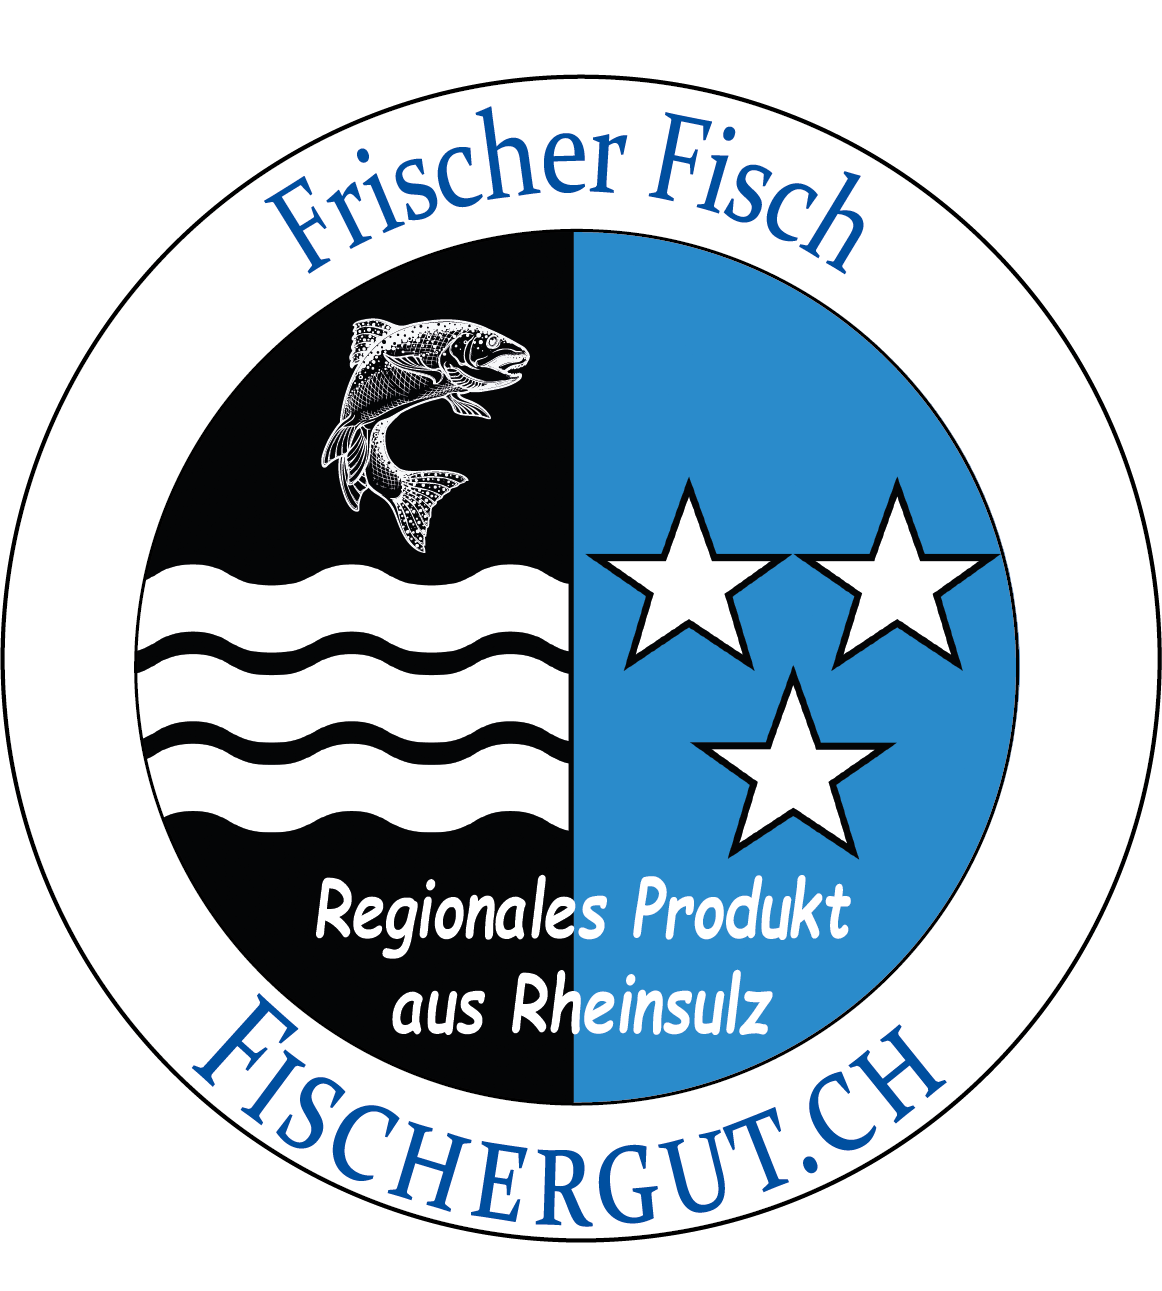 Frischer Fisch aus dem Fischergut Rheinsulz - ein regionales Produkt